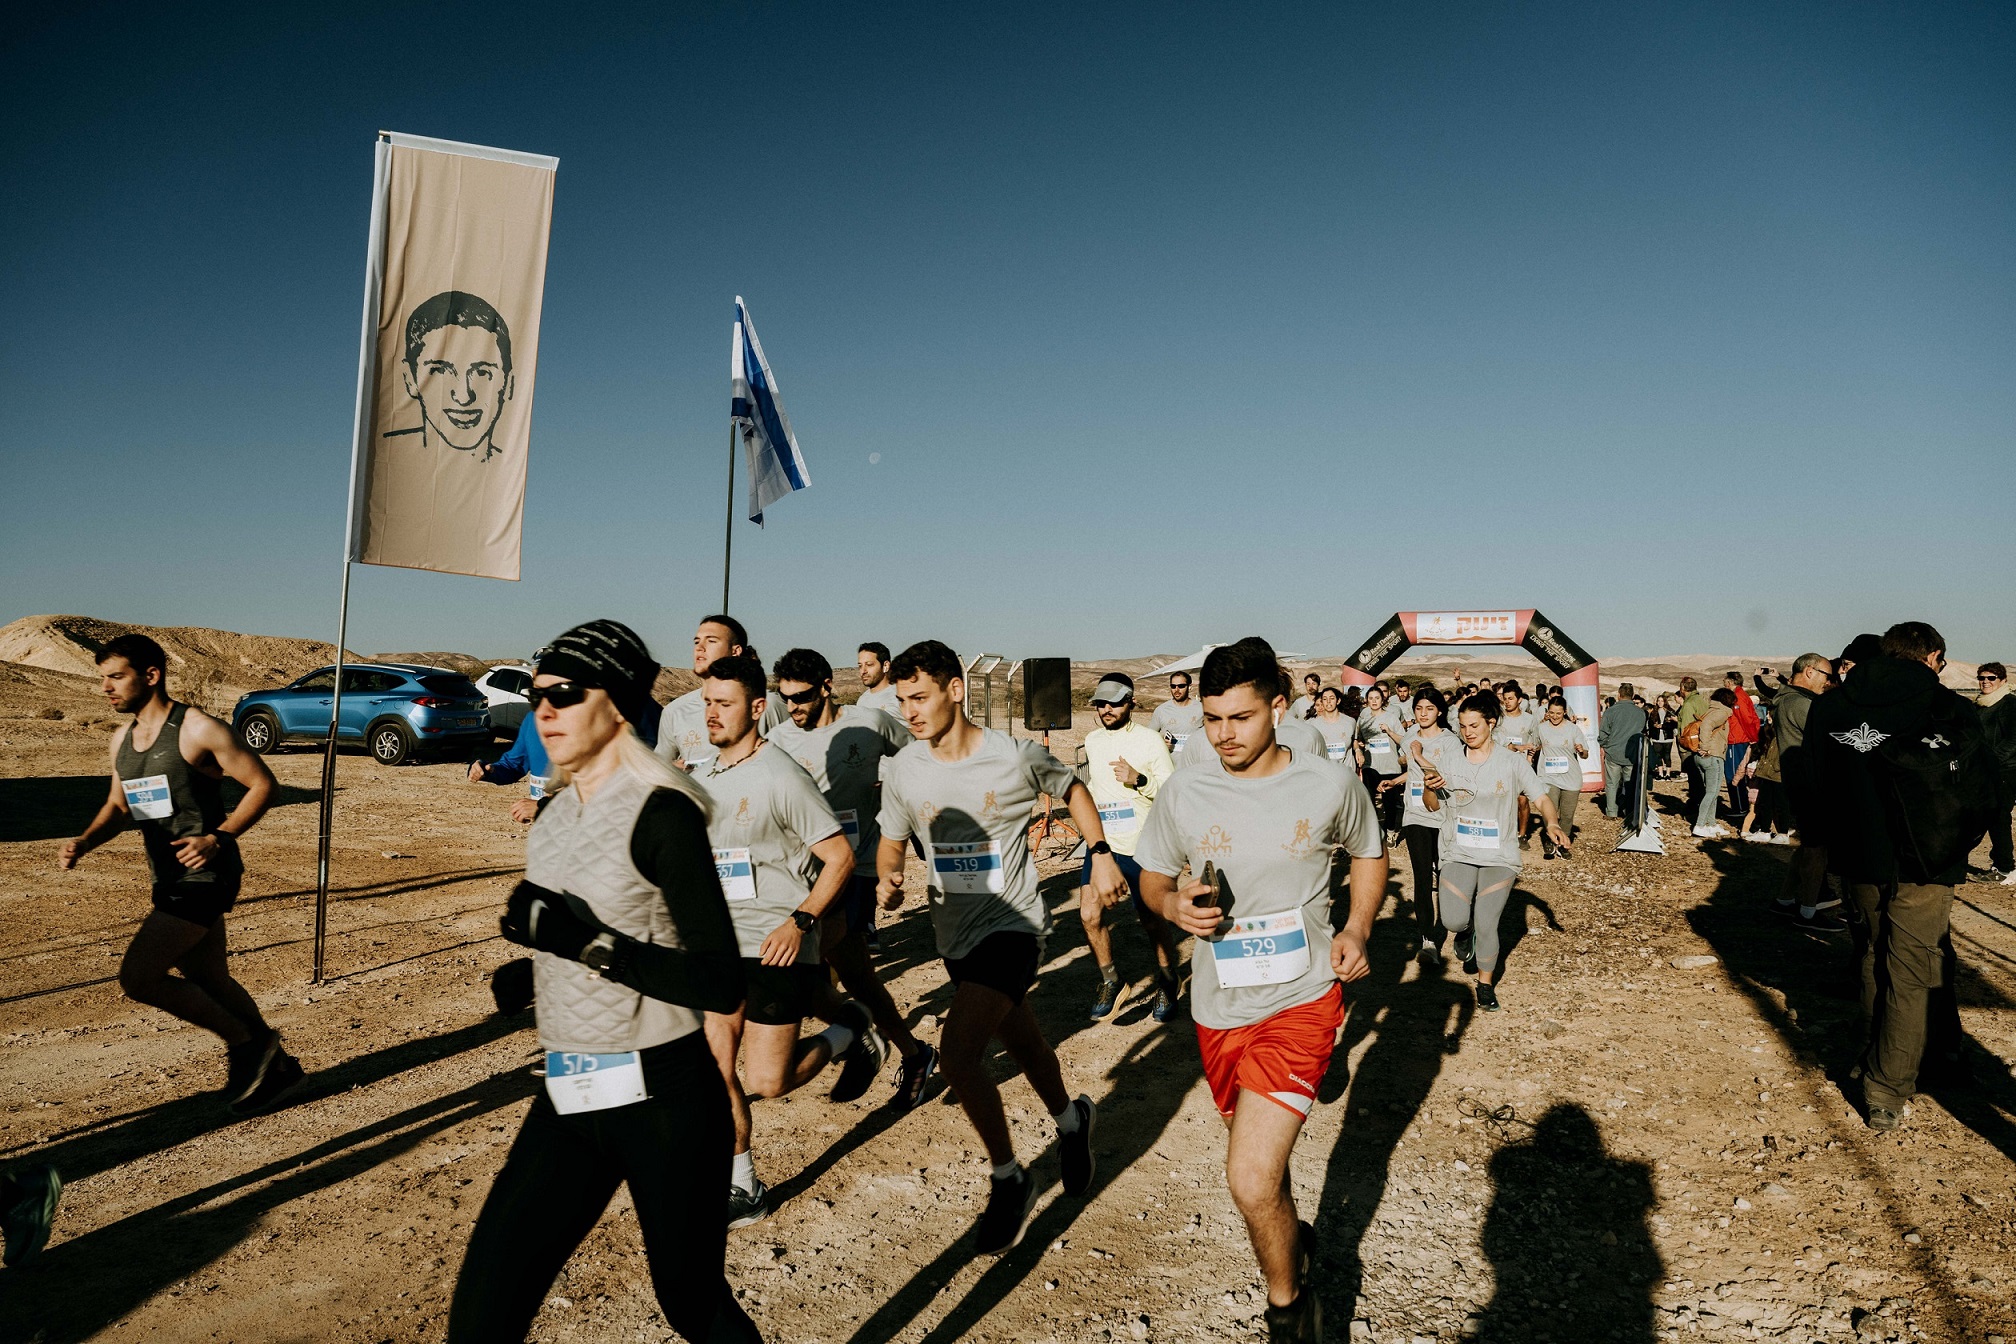 מאות רצים מרחבי הארץ השתתפו ב"מרוץ יוני בערבה" לזכרו של יוני פרידמן ז"ל